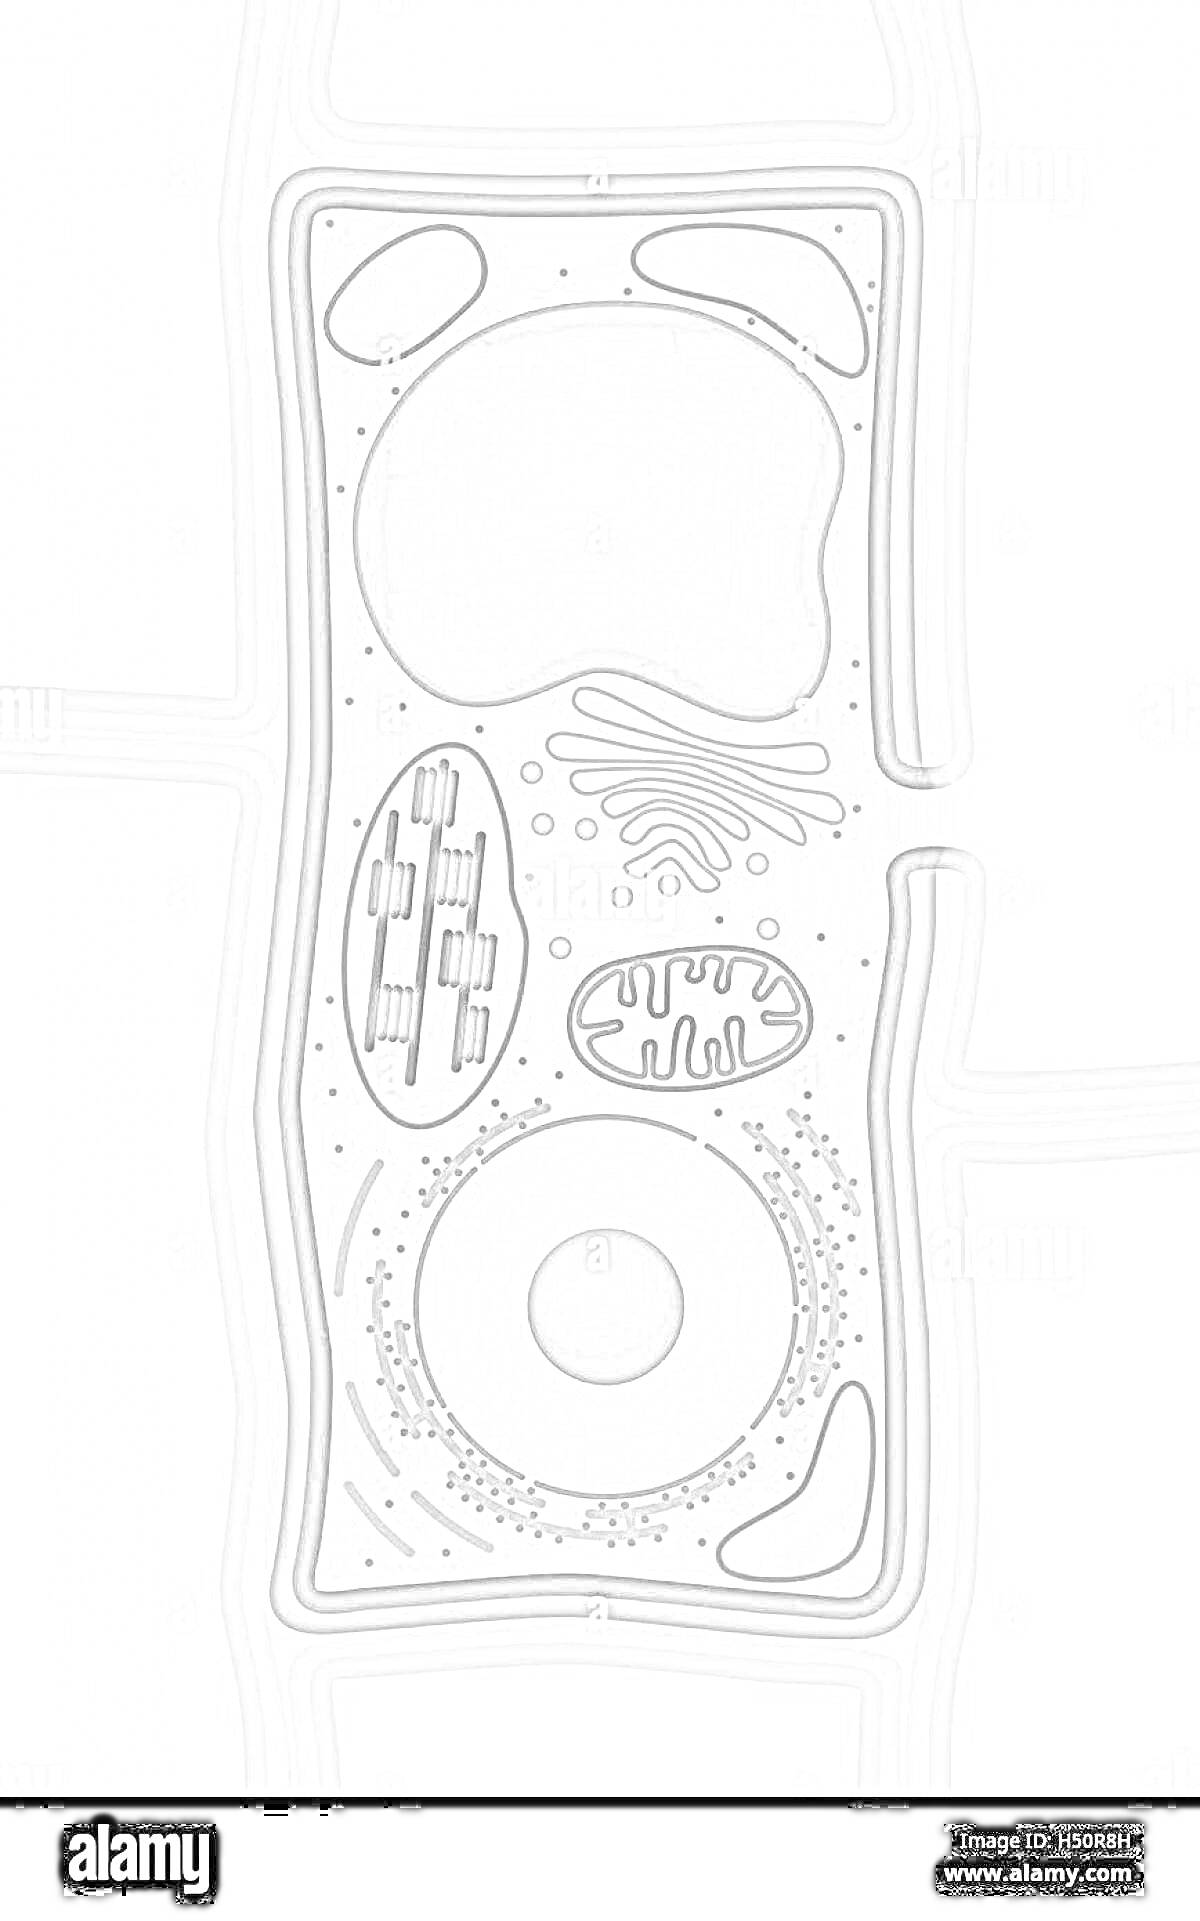 Раскраска Растительная клетка с органеллами (вакуоль, хлоропласты, аппарат Гольджи, митохондрии, ядро, эндоплазматический ретикулум, рибосомы, плазматическая мембрана, клеточная стенка)